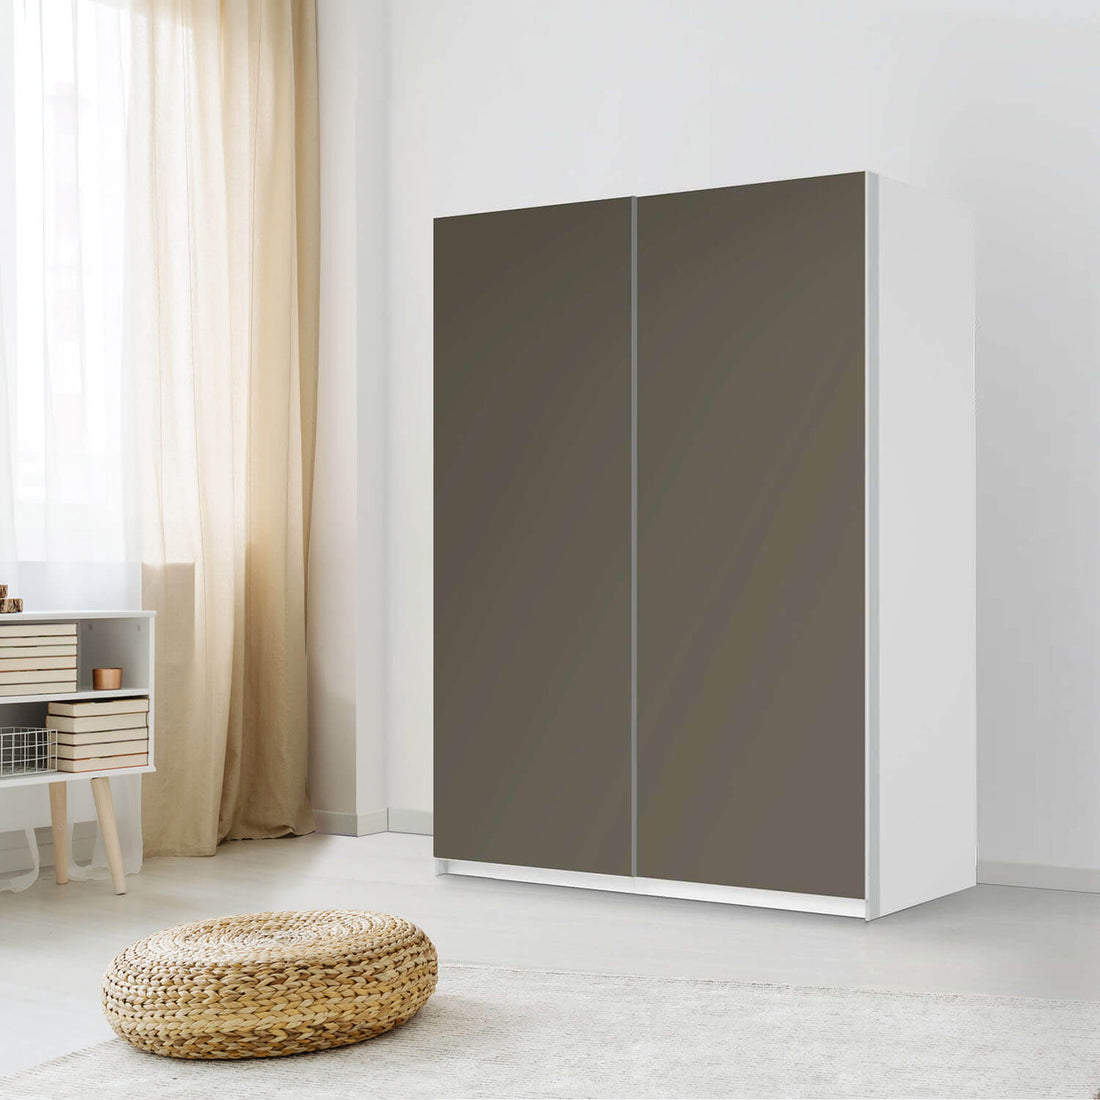 Möbel Klebefolie Braungrau Dark - IKEA Pax Schrank 201 cm Höhe - Schiebetür 75 cm - Schlafzimmer